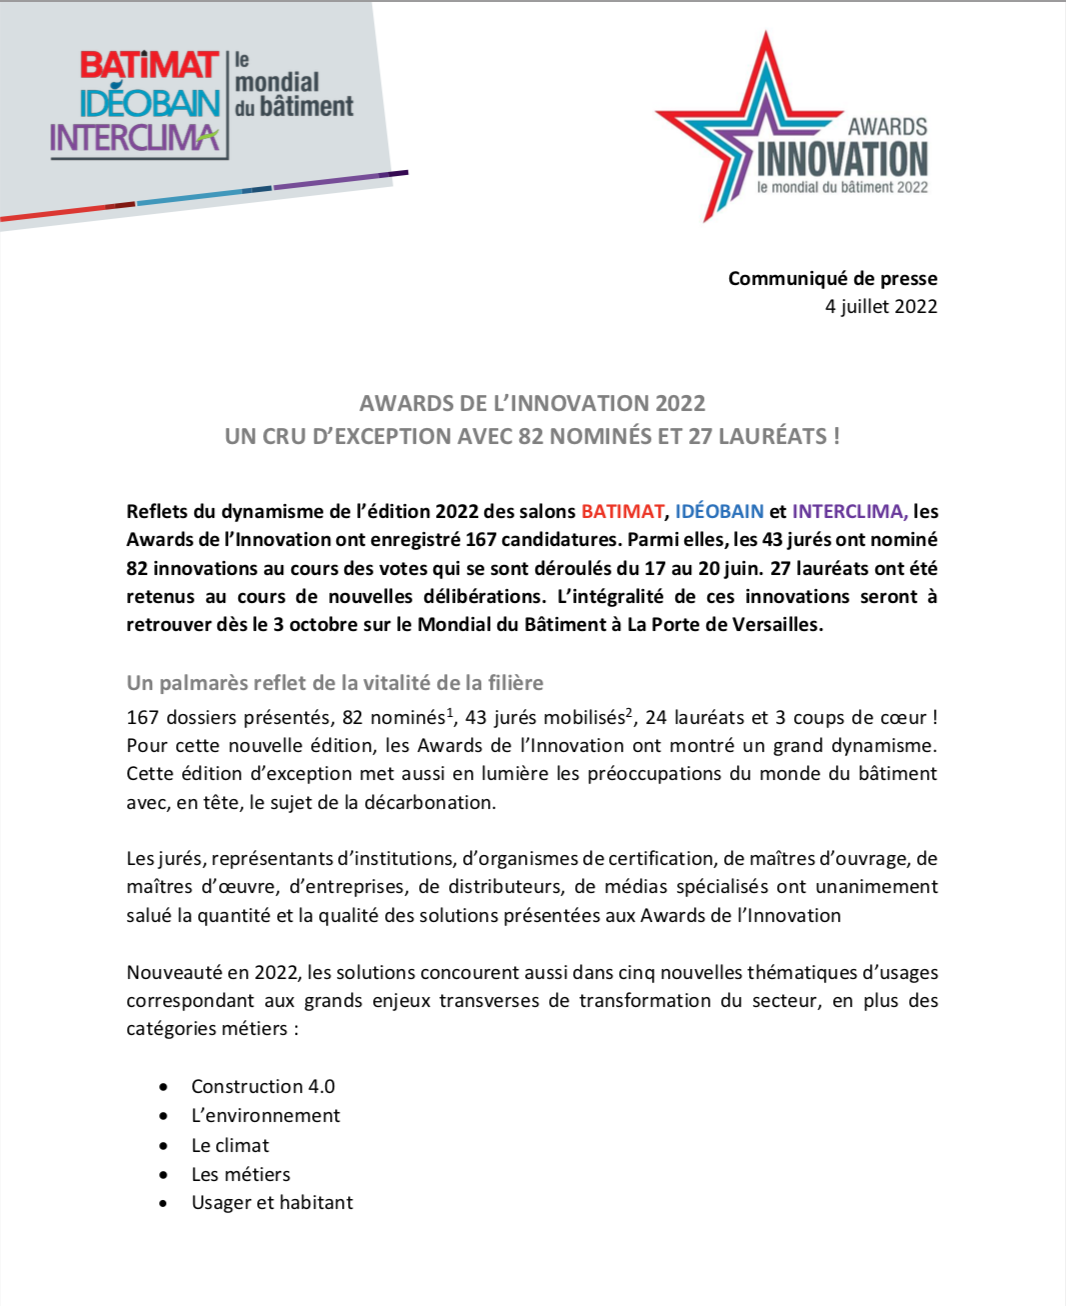 CP JUILLET 2022 Award De Linnovation 2022 1